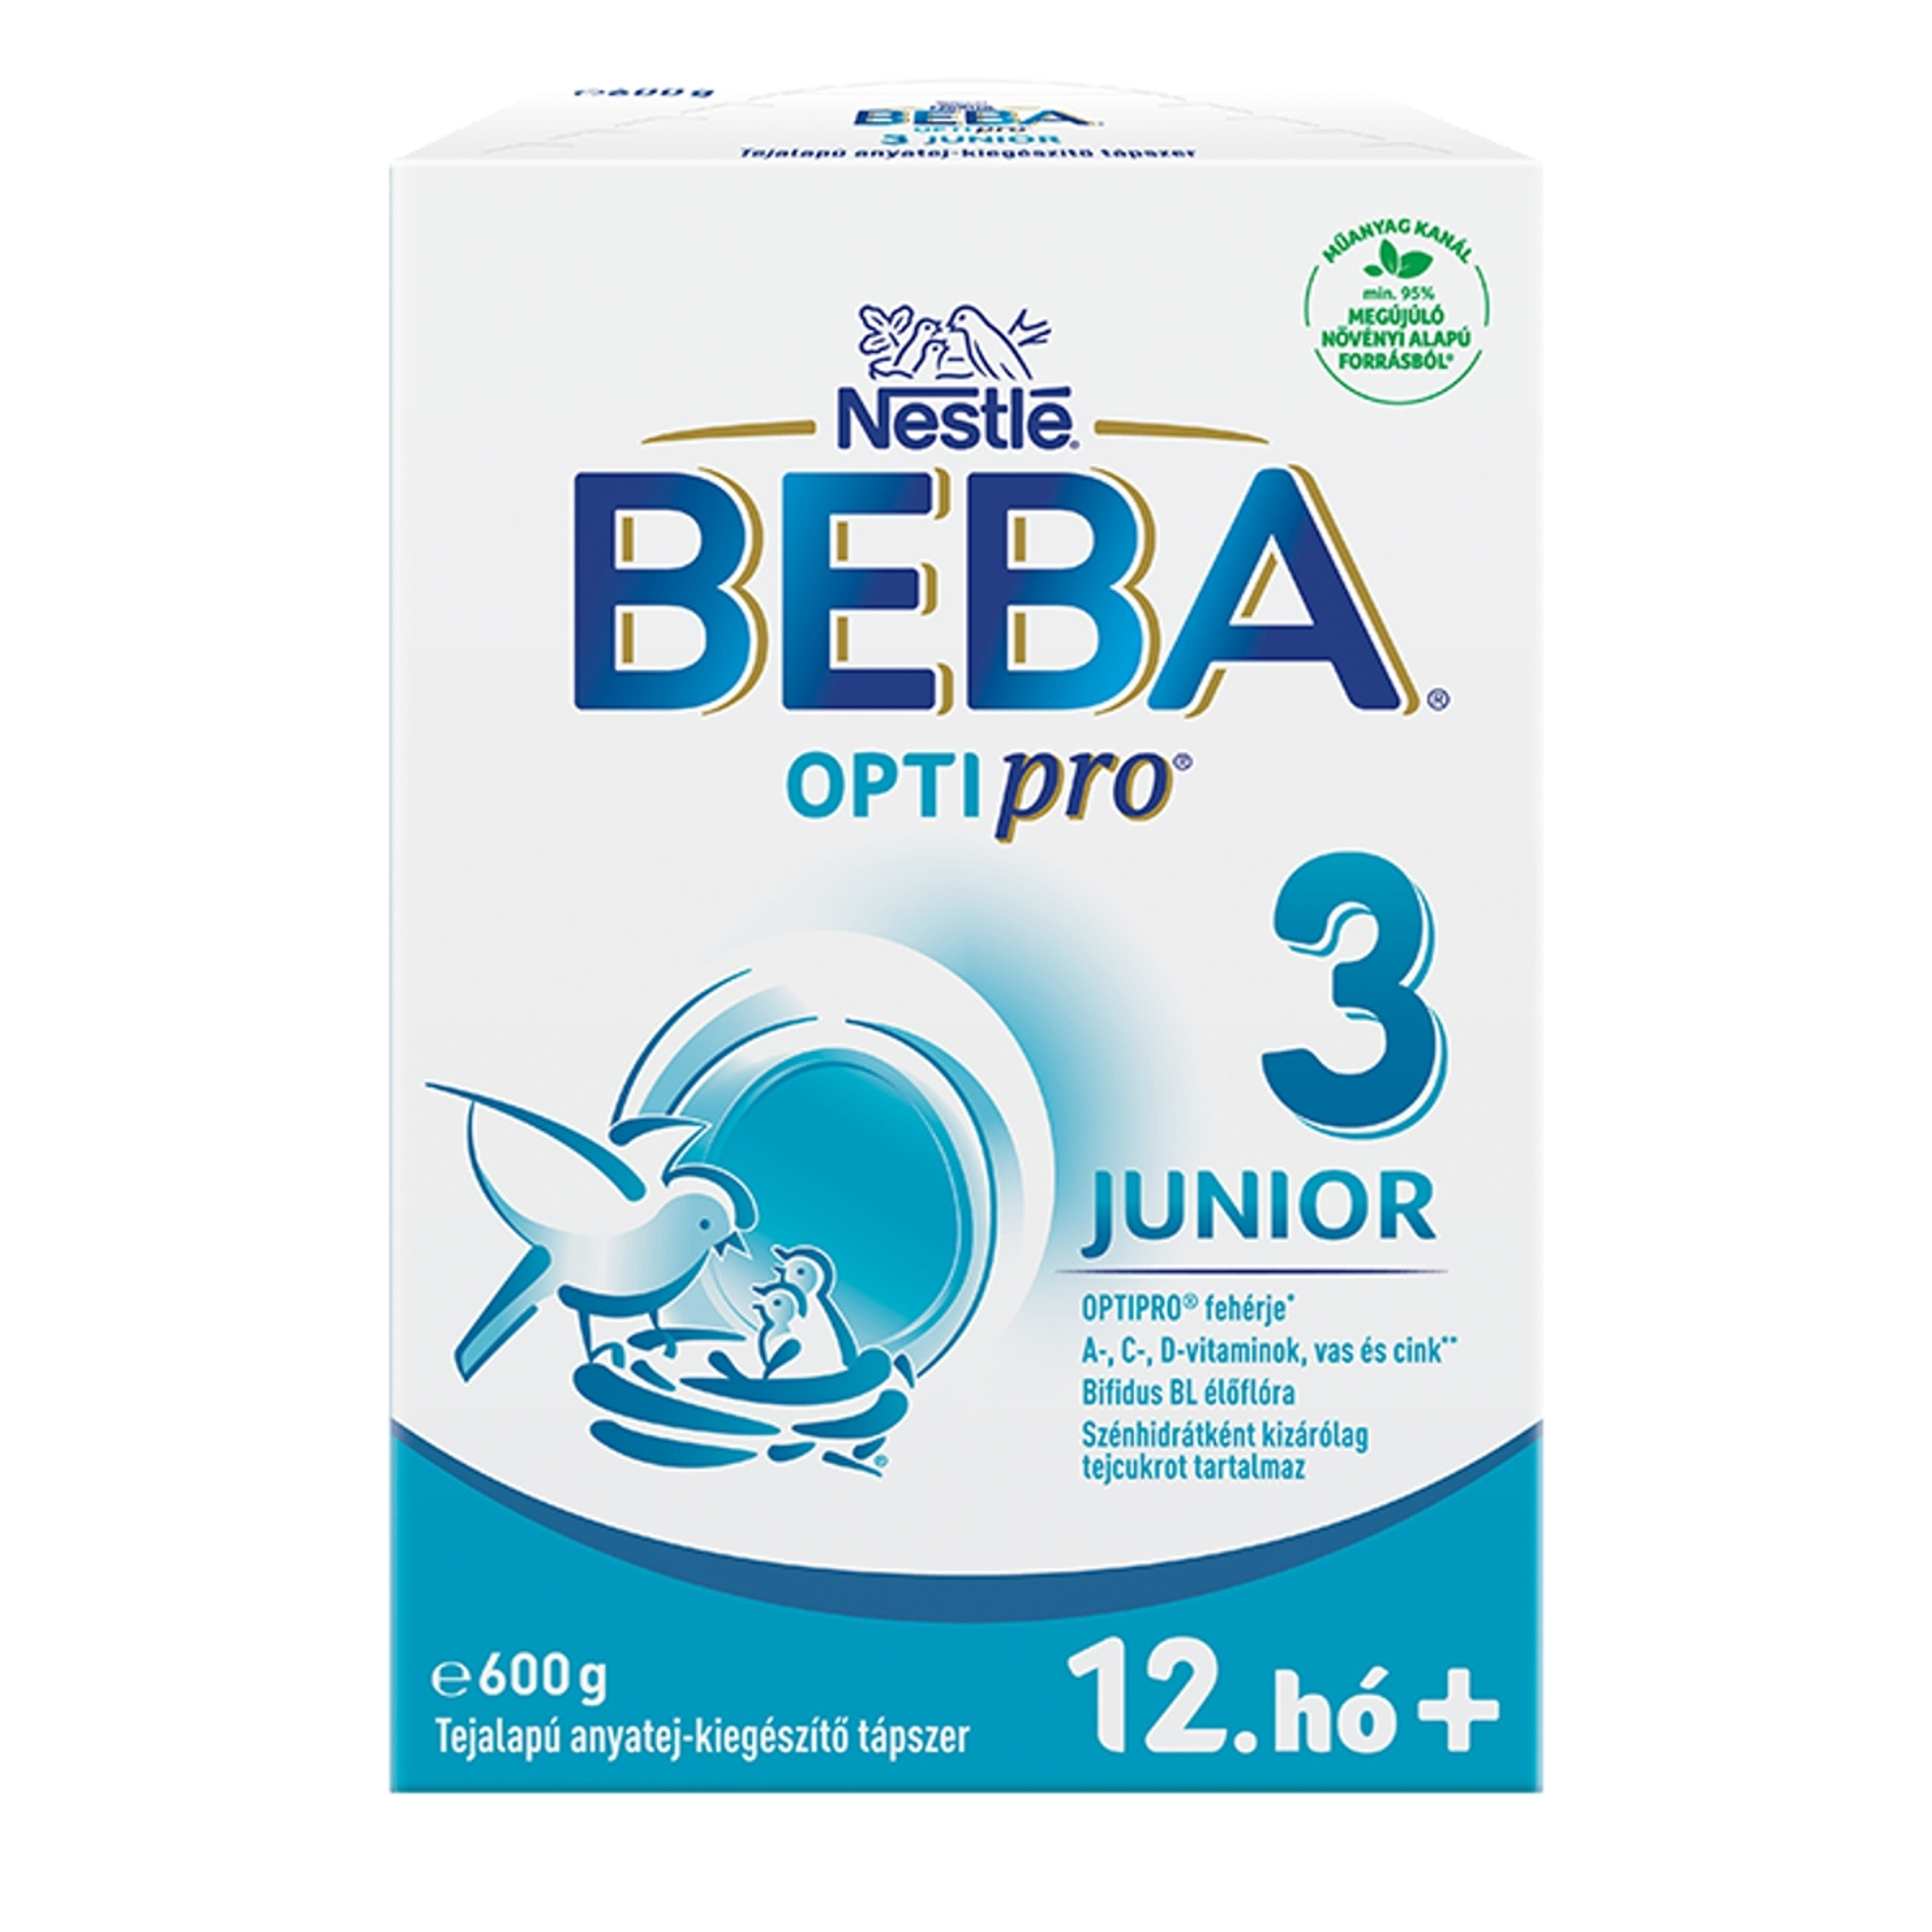 Beba Optipro 3 Junior tejalapú anyatej-kiegészítő tápszer 12. hónapos kortól - 600 g